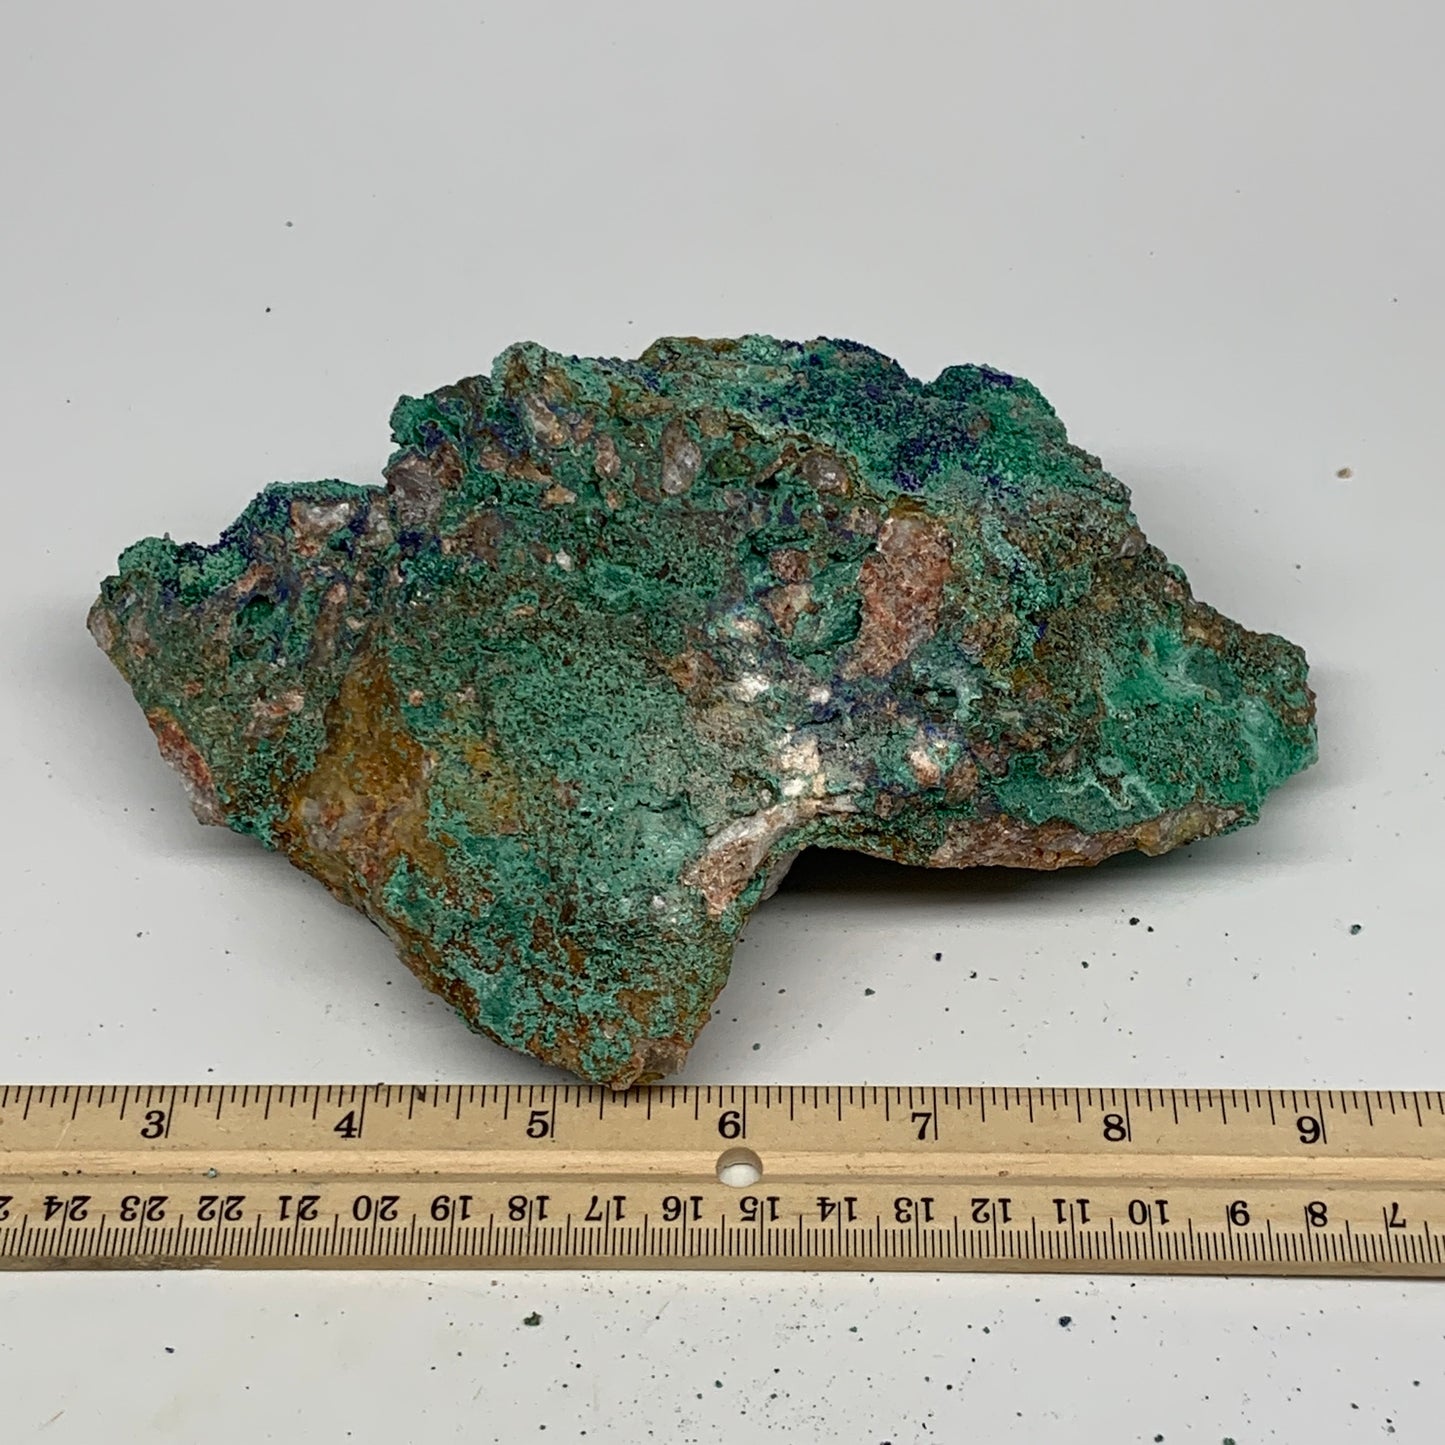 1138g, 7.1"x4.7"x2.8", Rough Azurite Malachite Mineral Specimen @Morocco, B10913